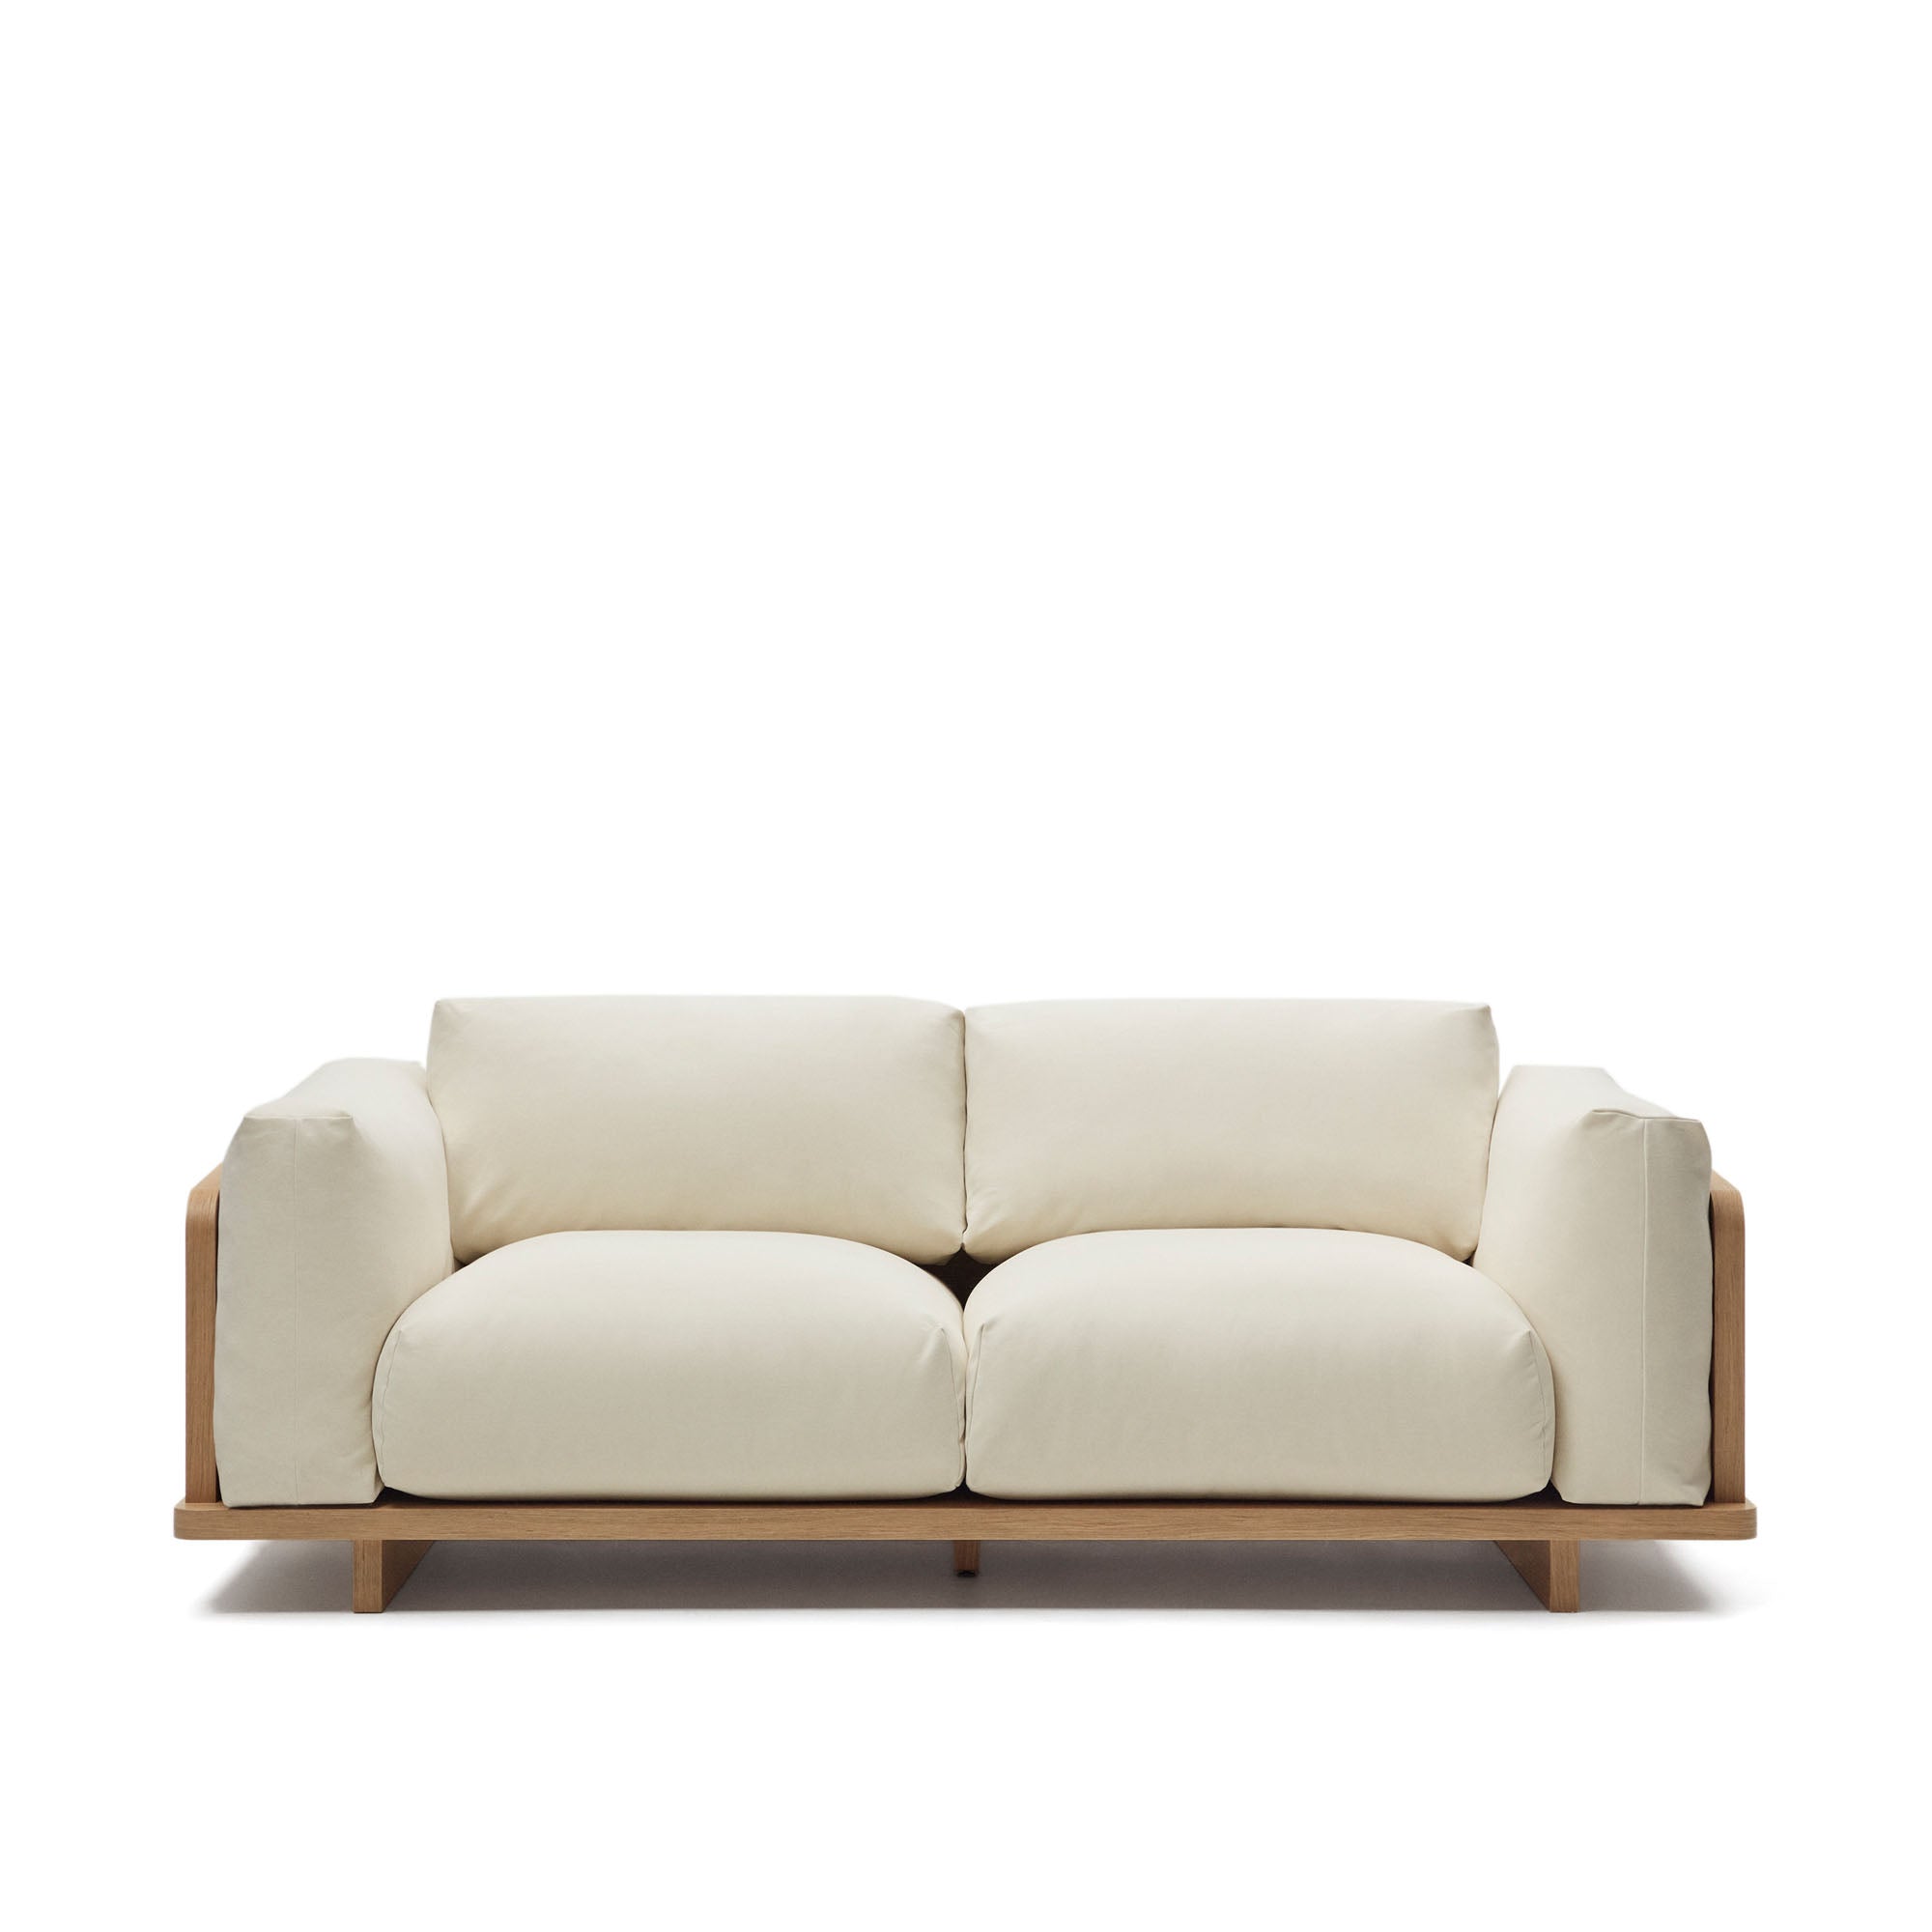 Oaq 3 személyes kanapé bézs színben, 225 cm